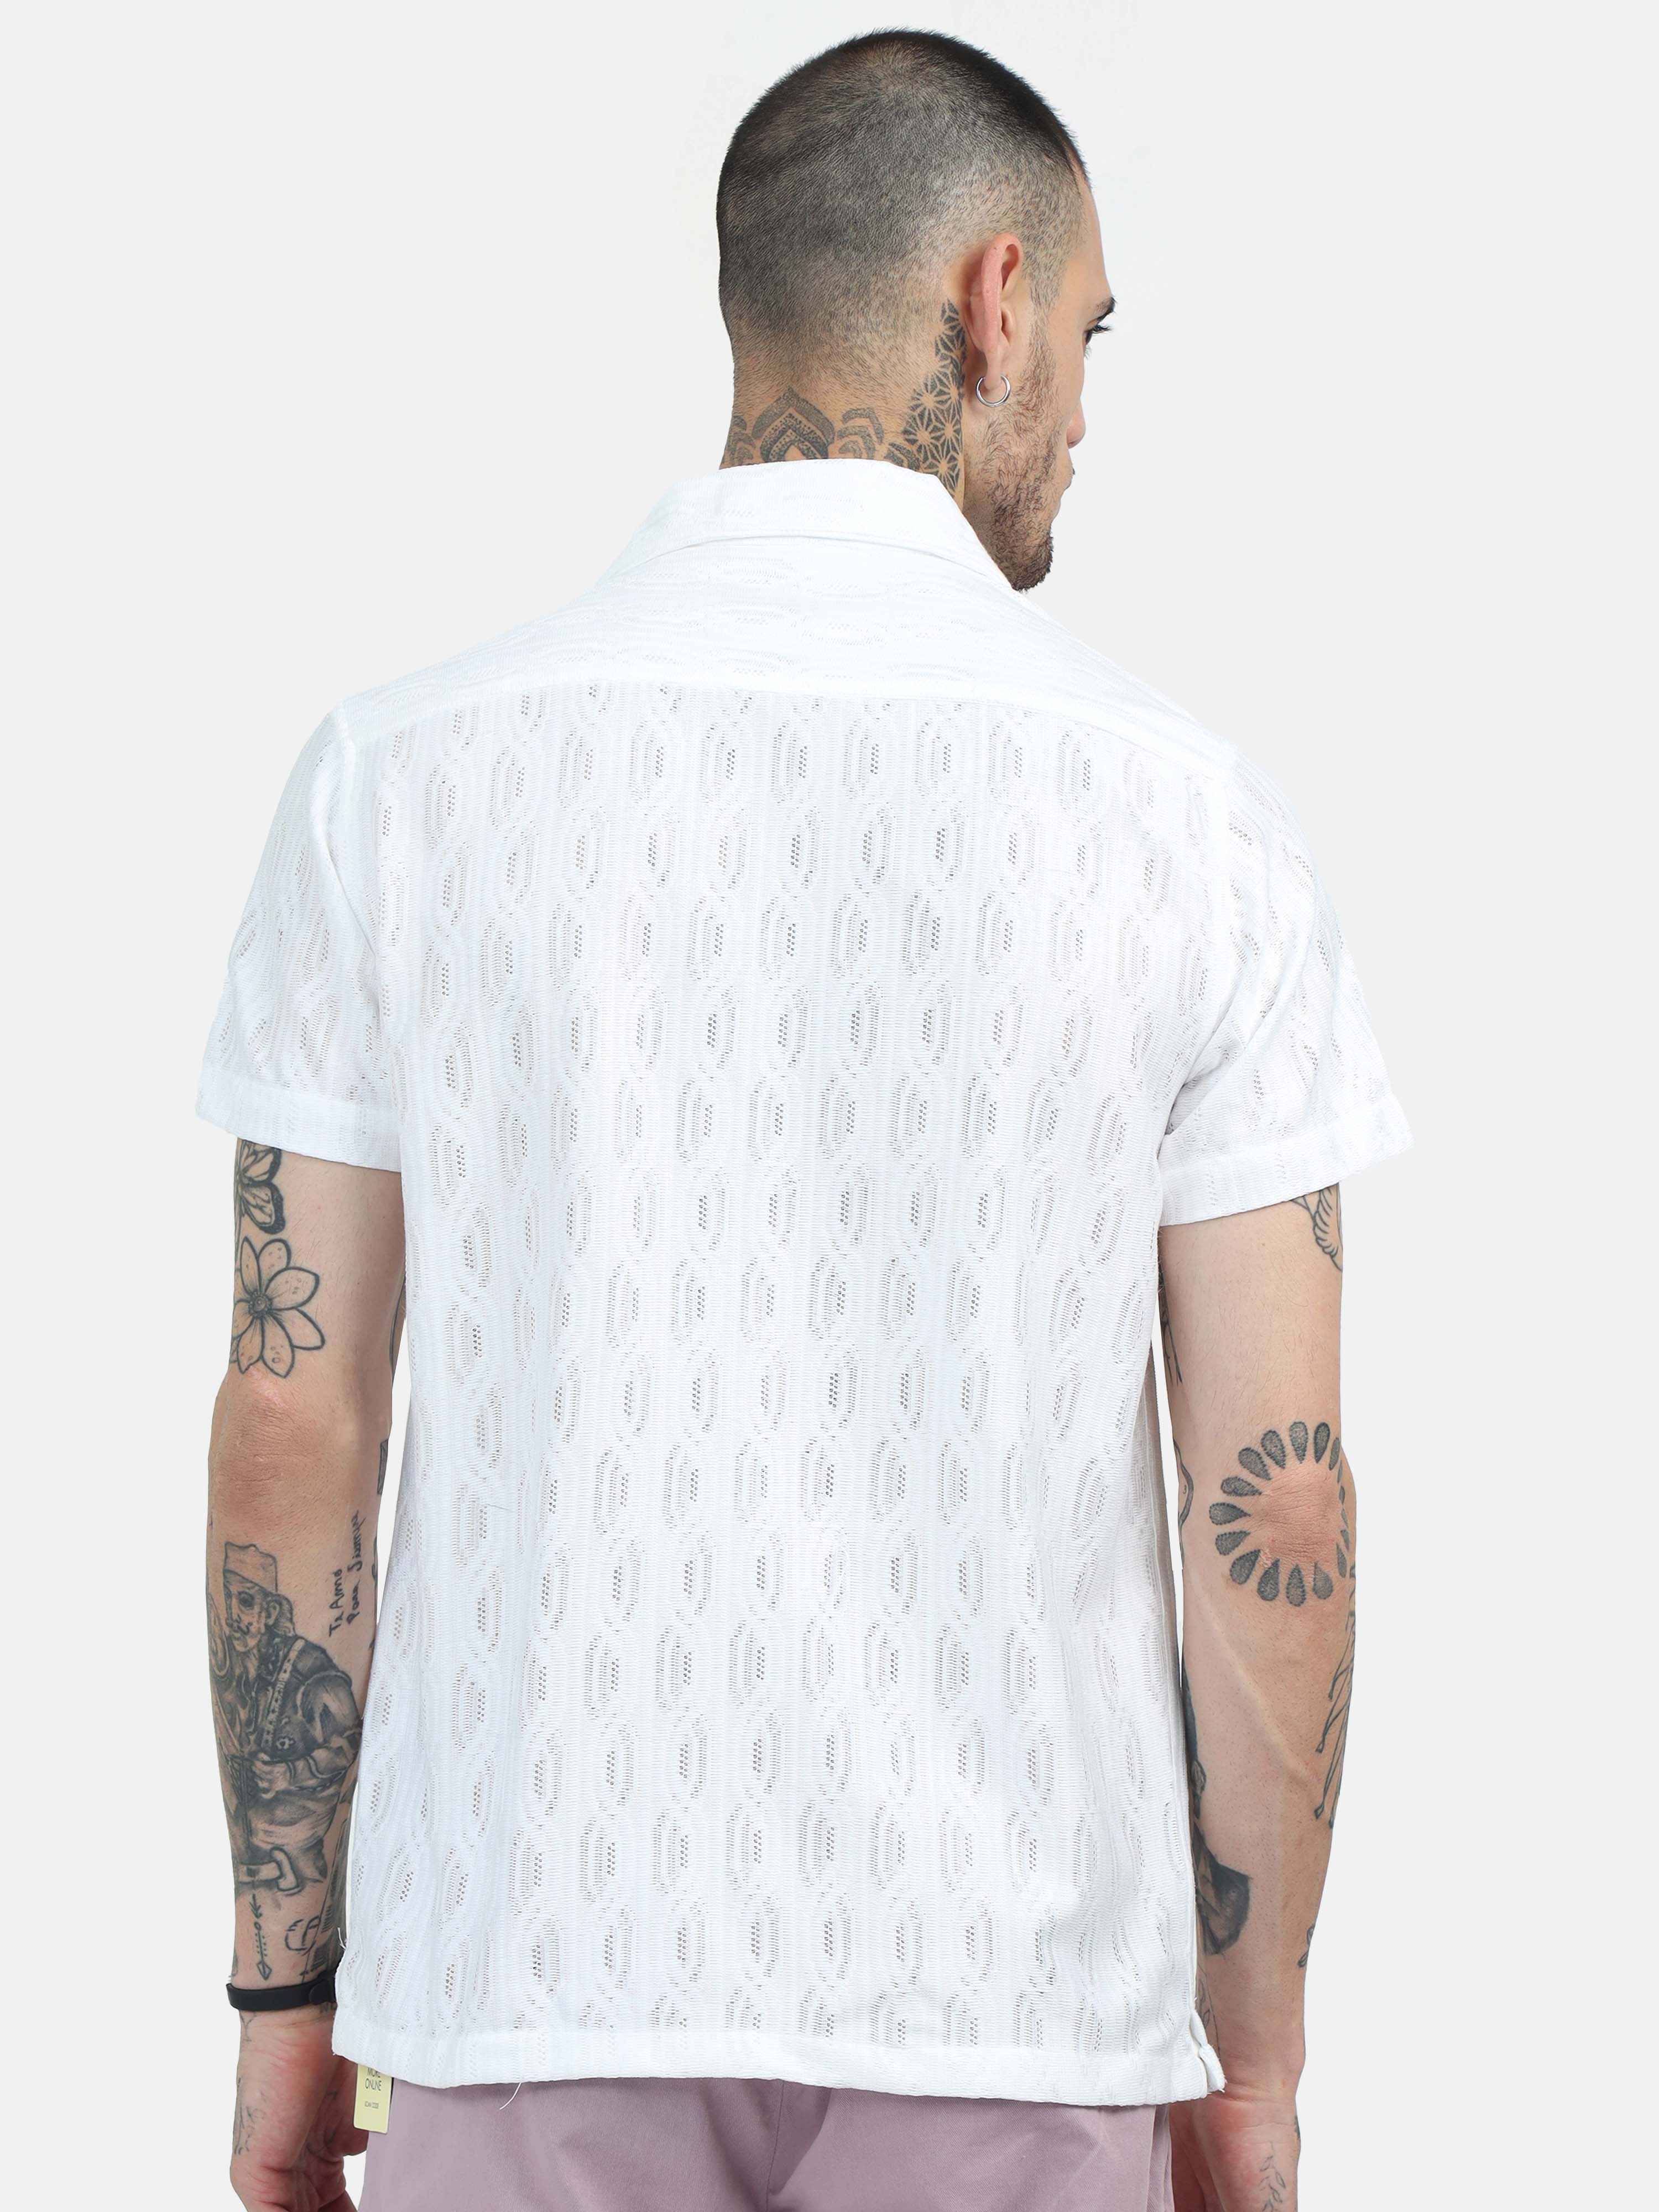 Meld Crochet White Shirt